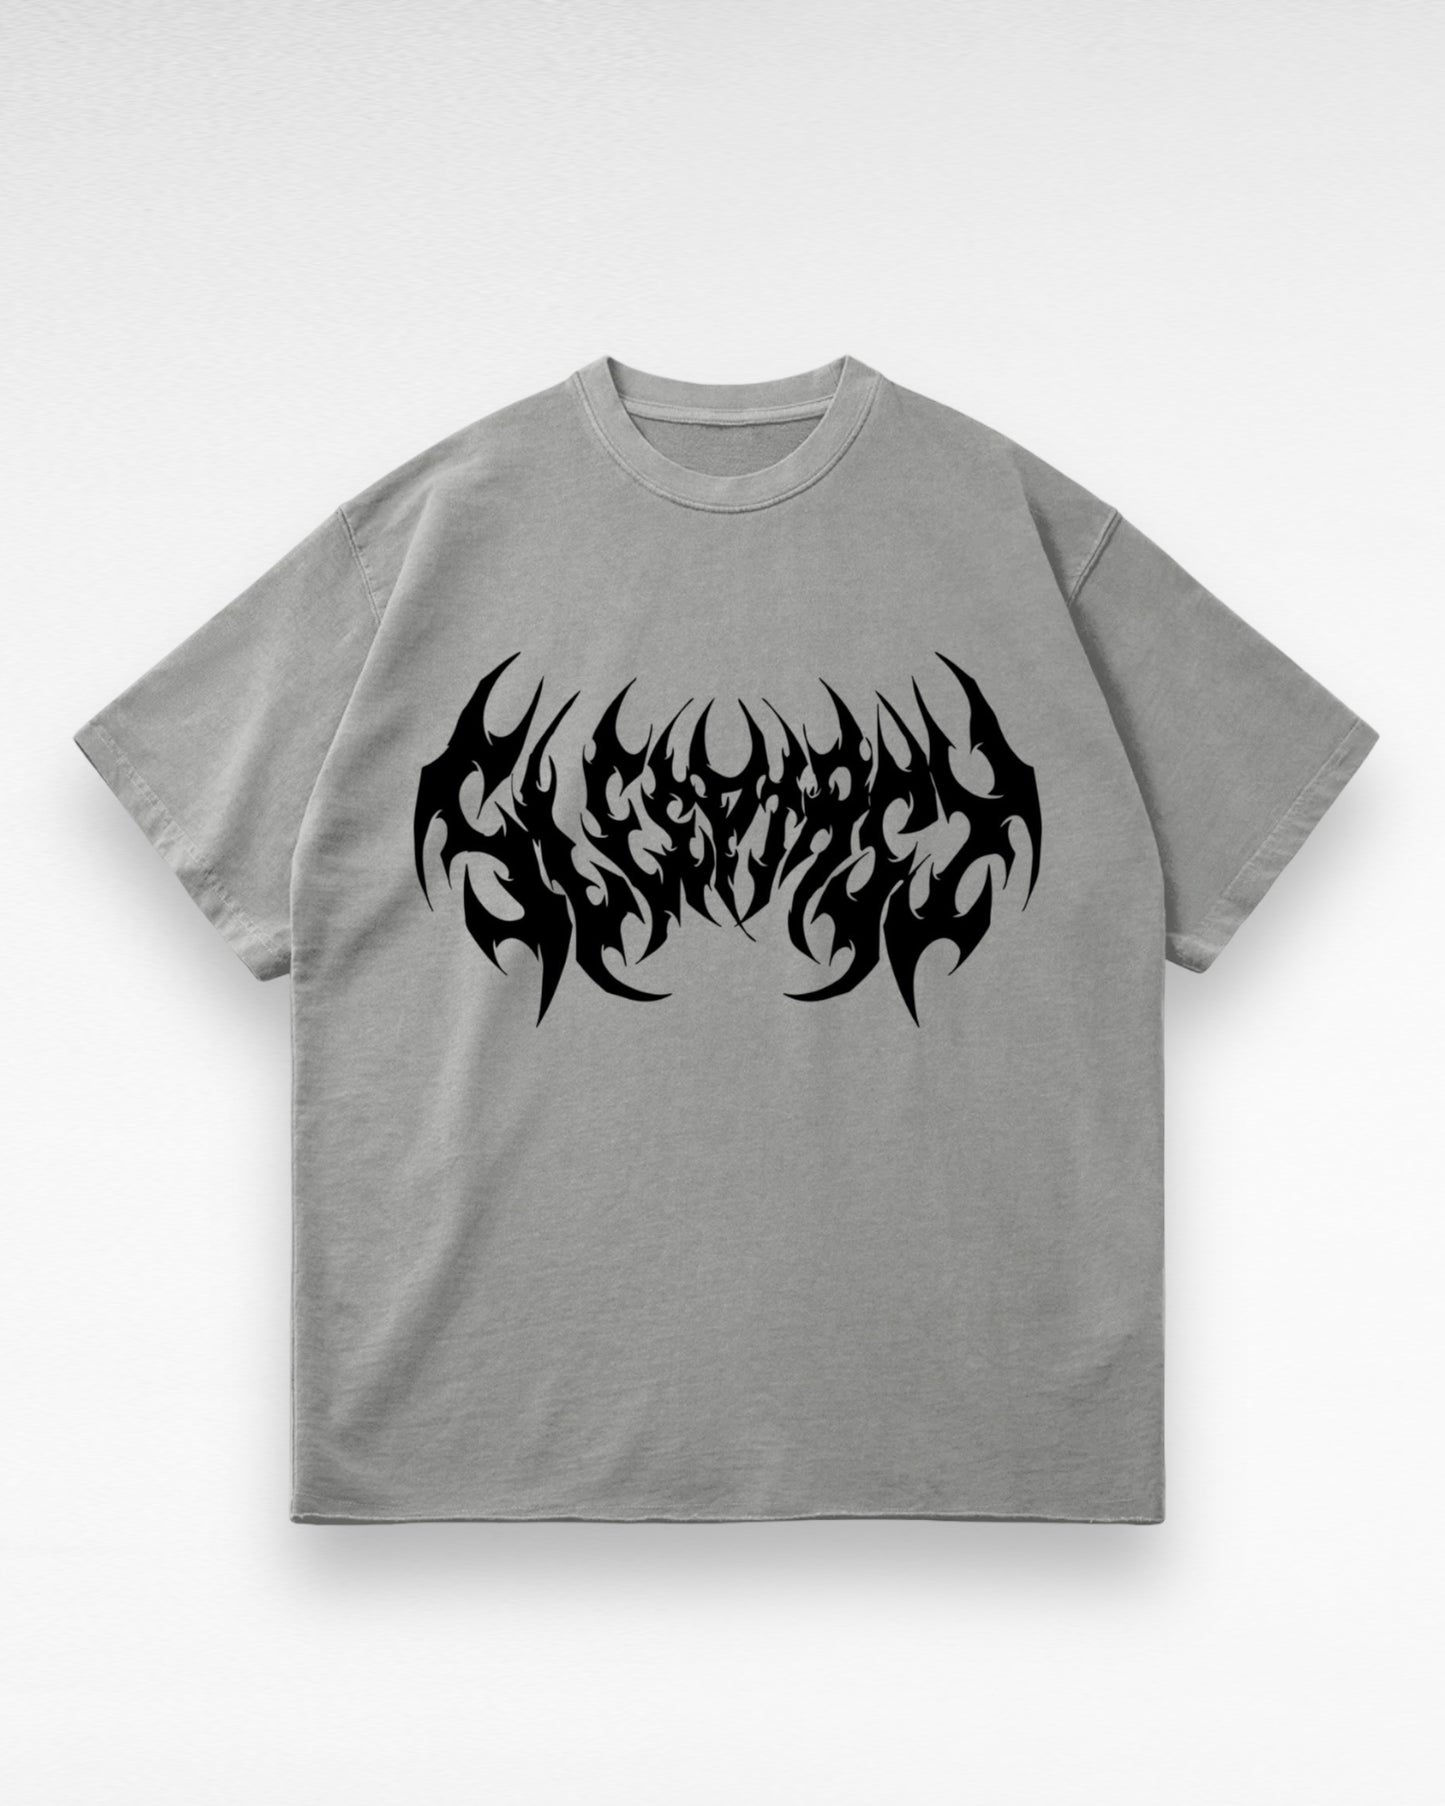 Unisex Faded Raw Hem Dark Logo T-shirt